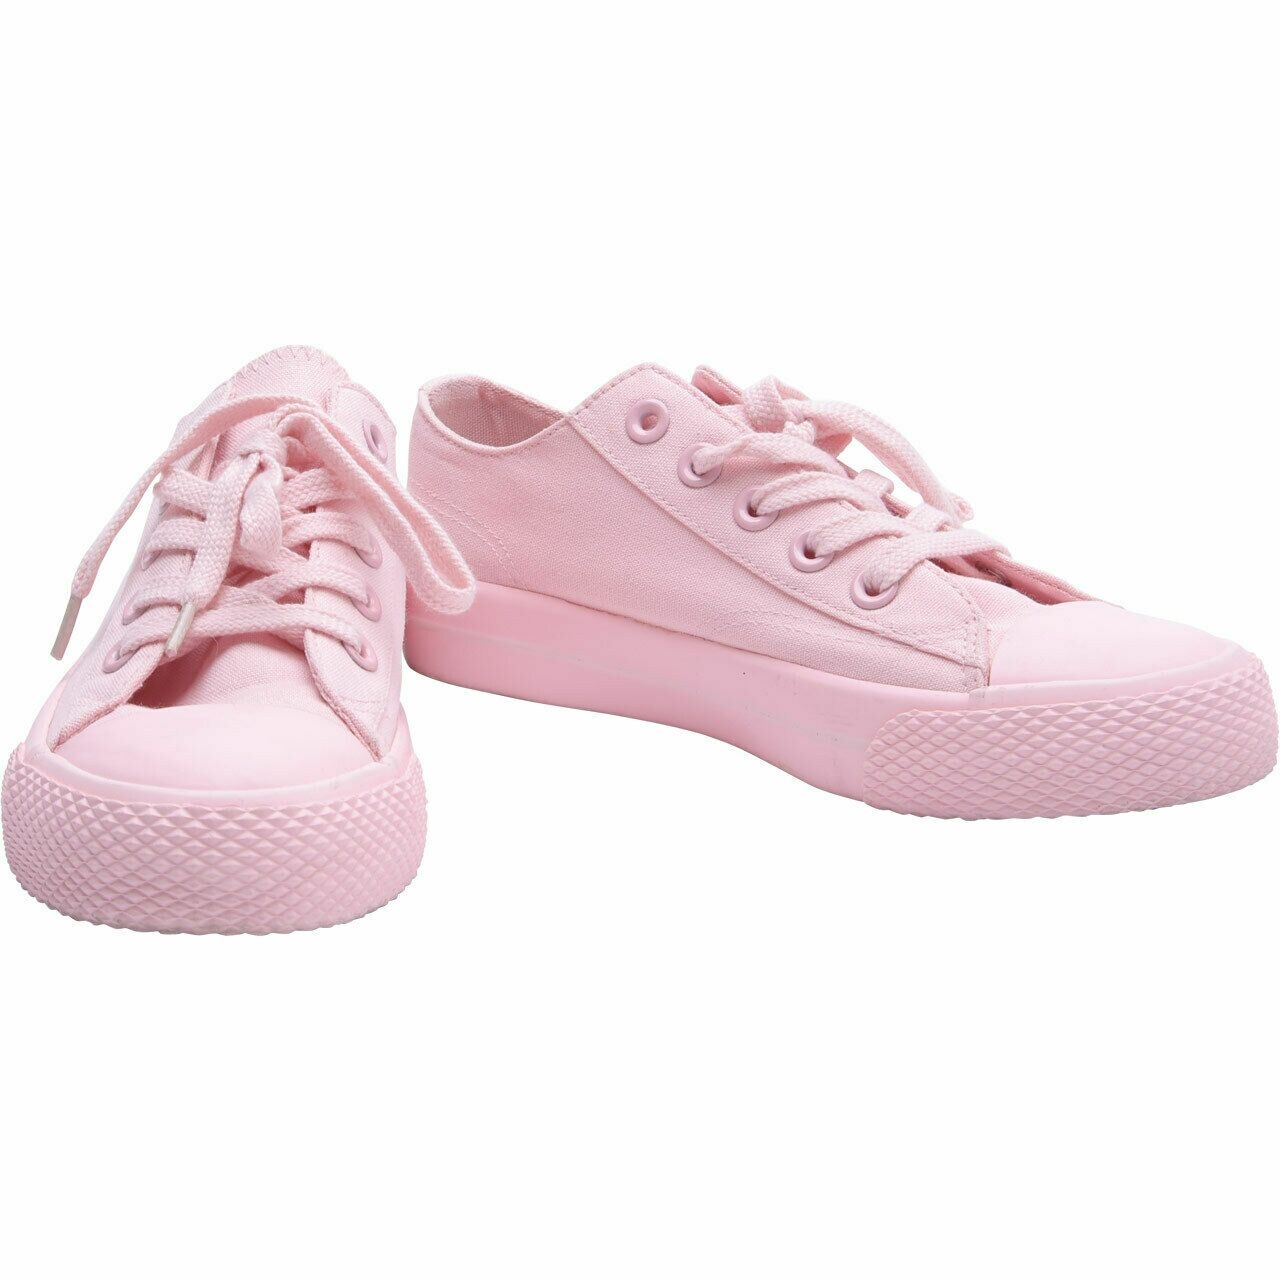 Airwalk Pink Sneakers